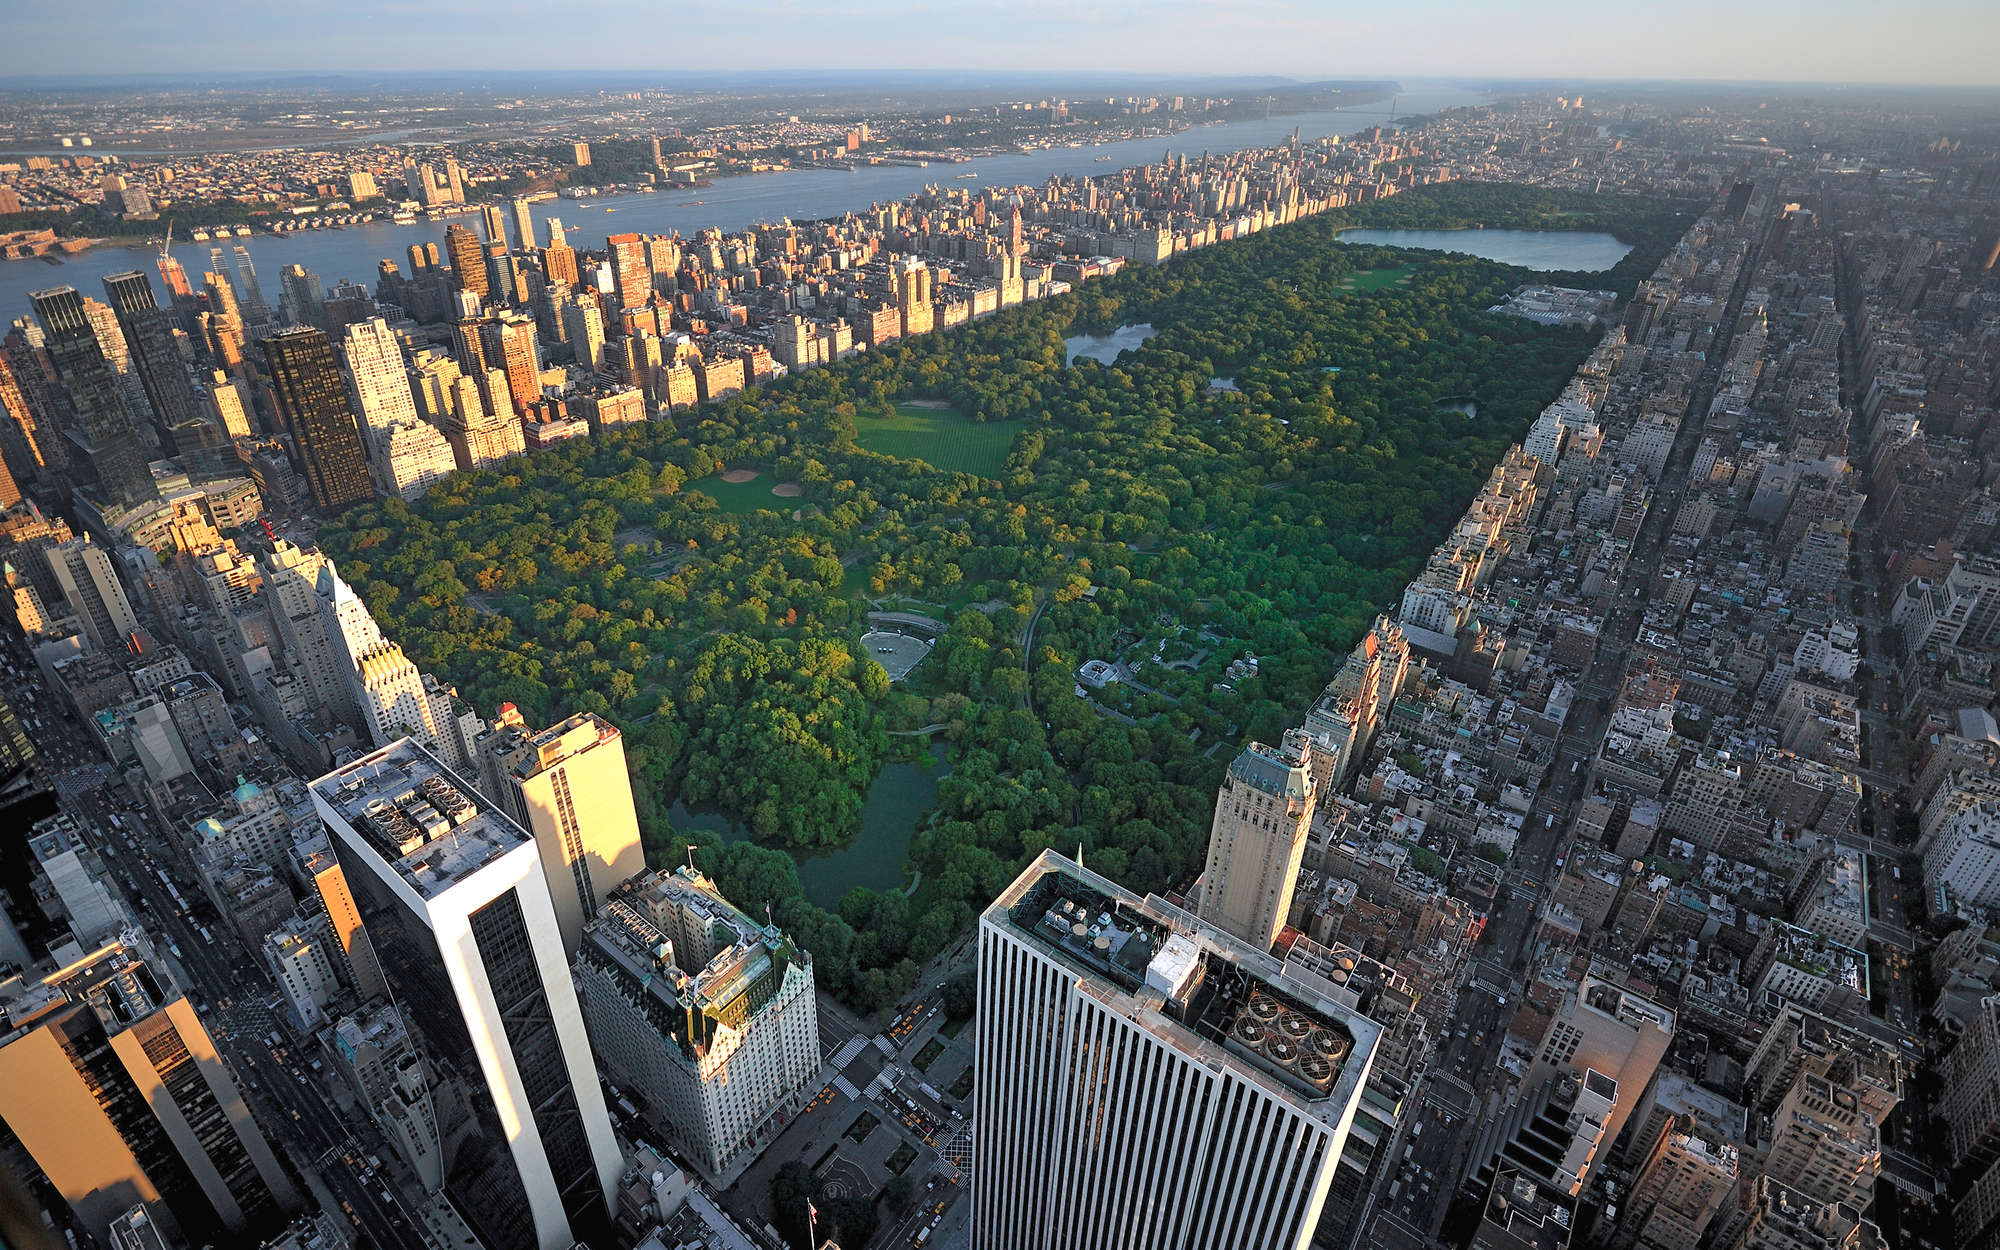             Fotomural New York Central Park desde arriba - tejido no tejido liso de primera calidad
        